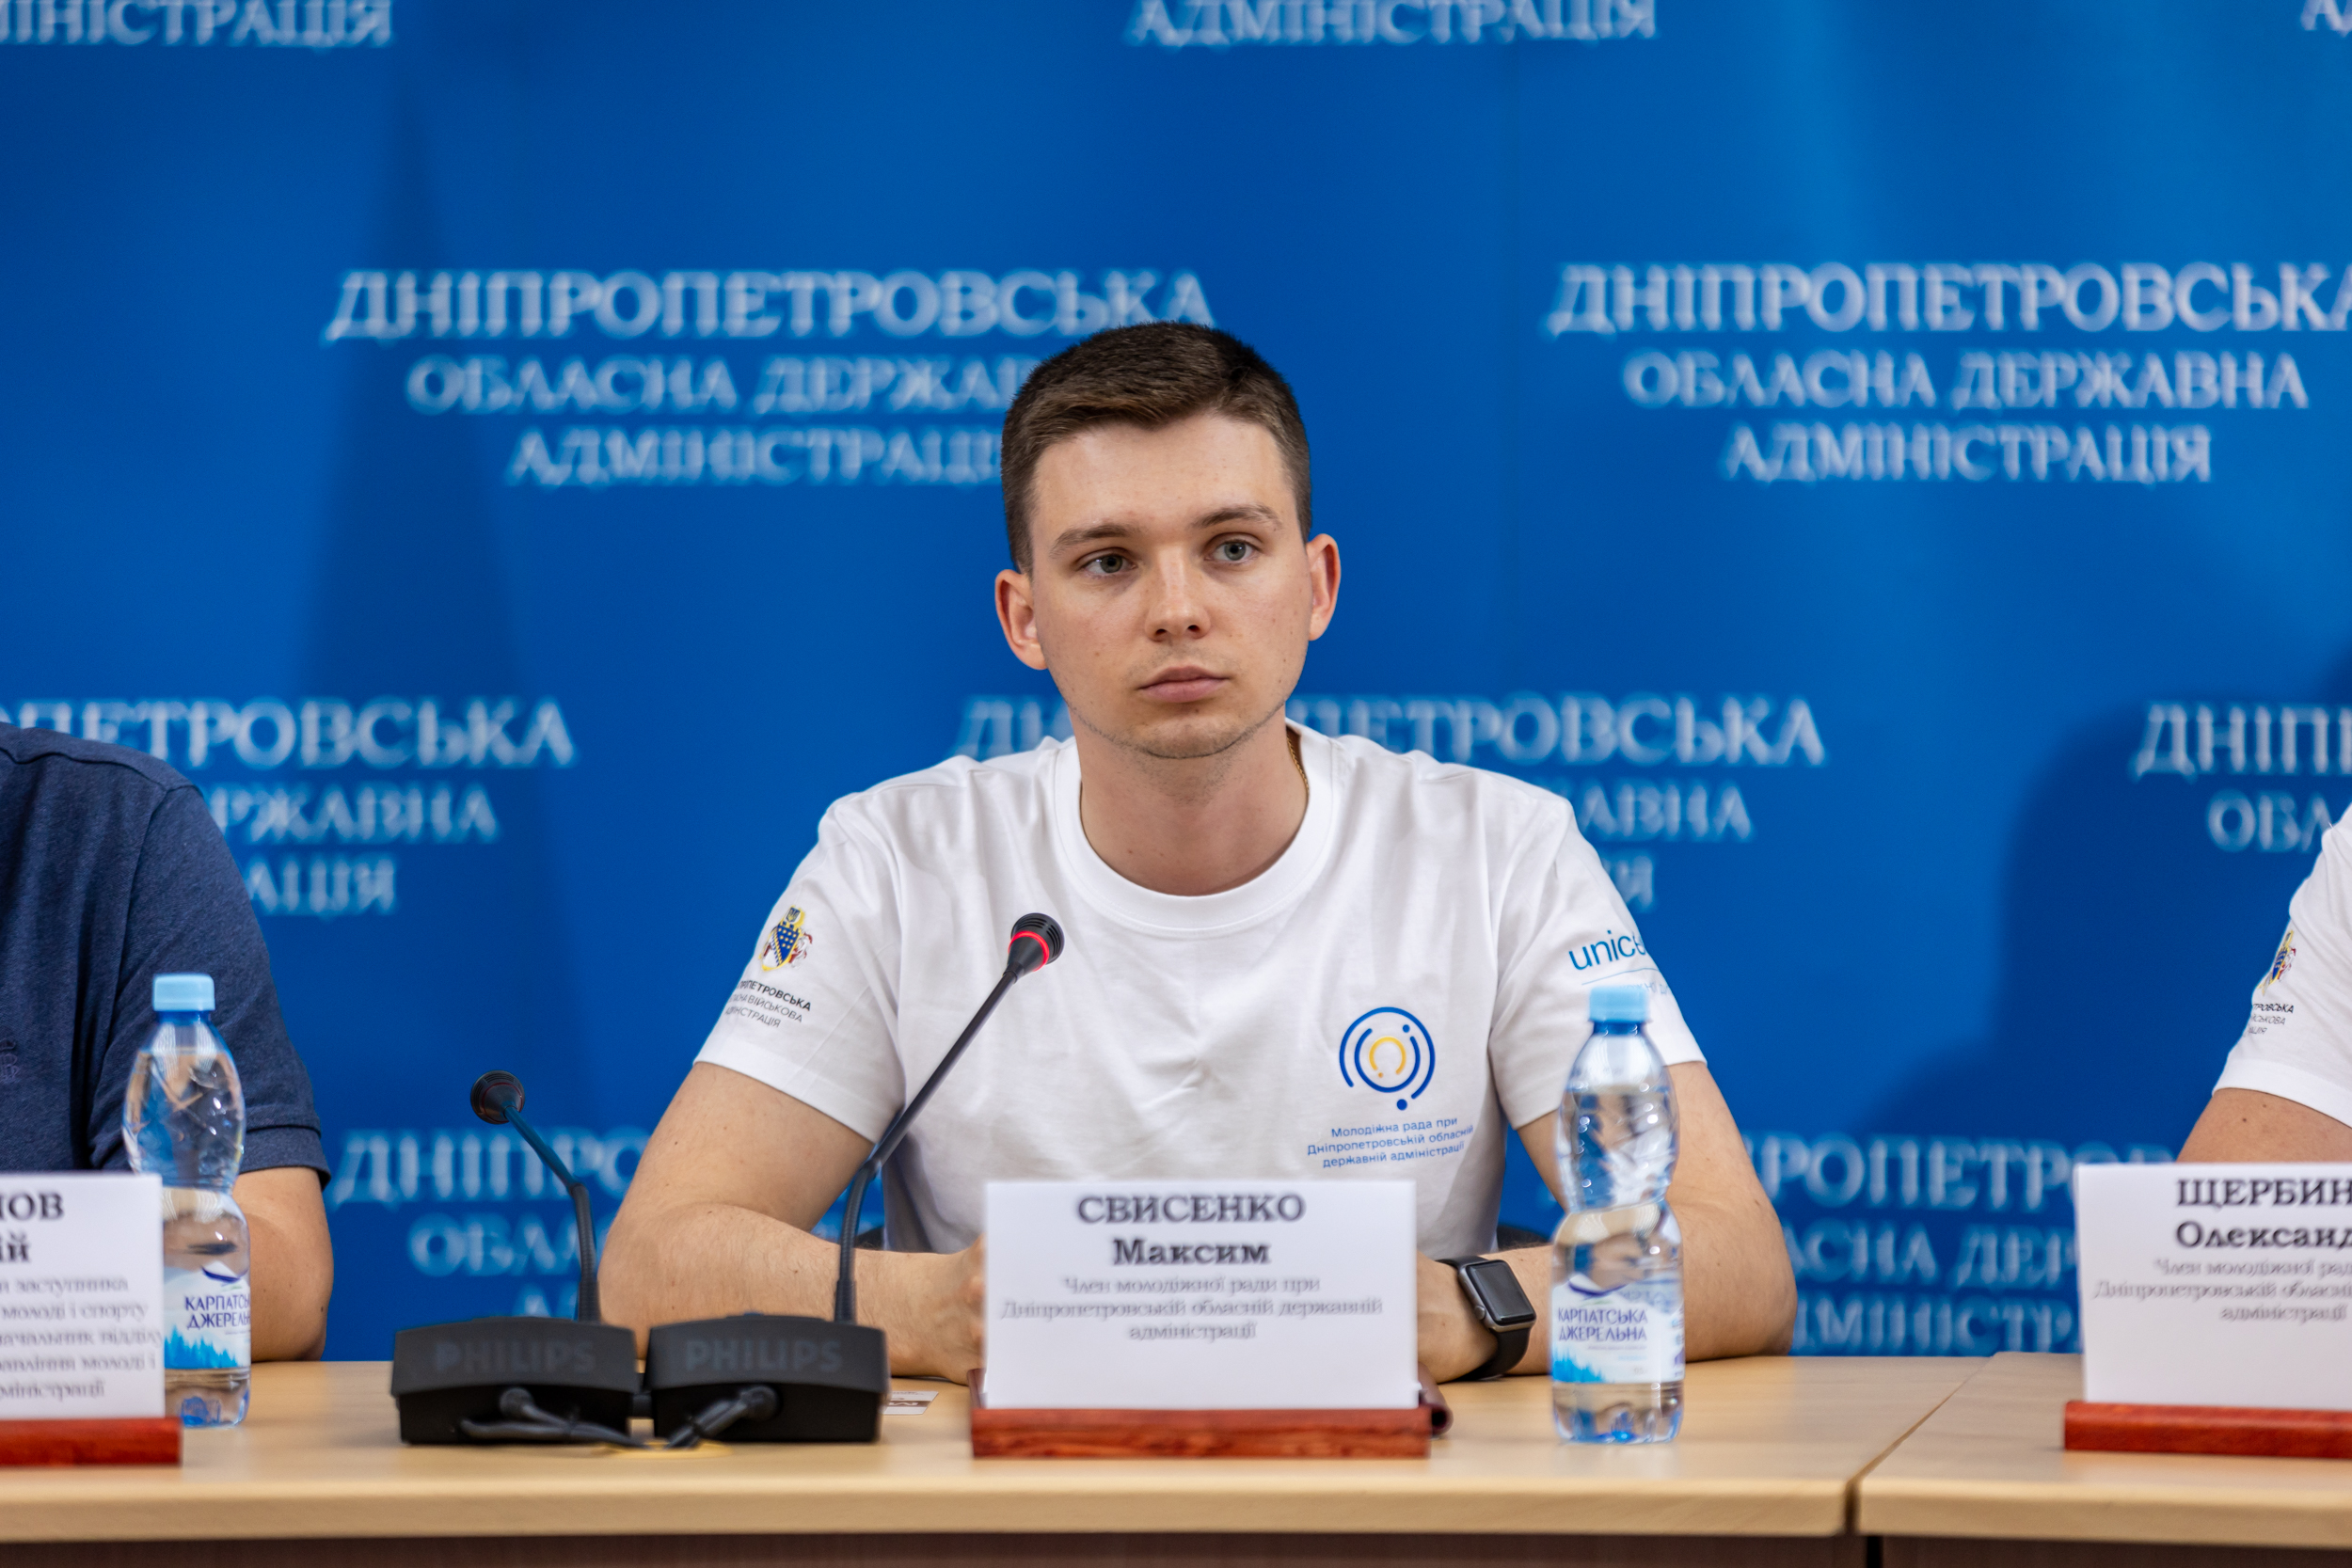 Голова Президії Молодіжної ради при Дніпропетровській ОВА Максим Свисенко